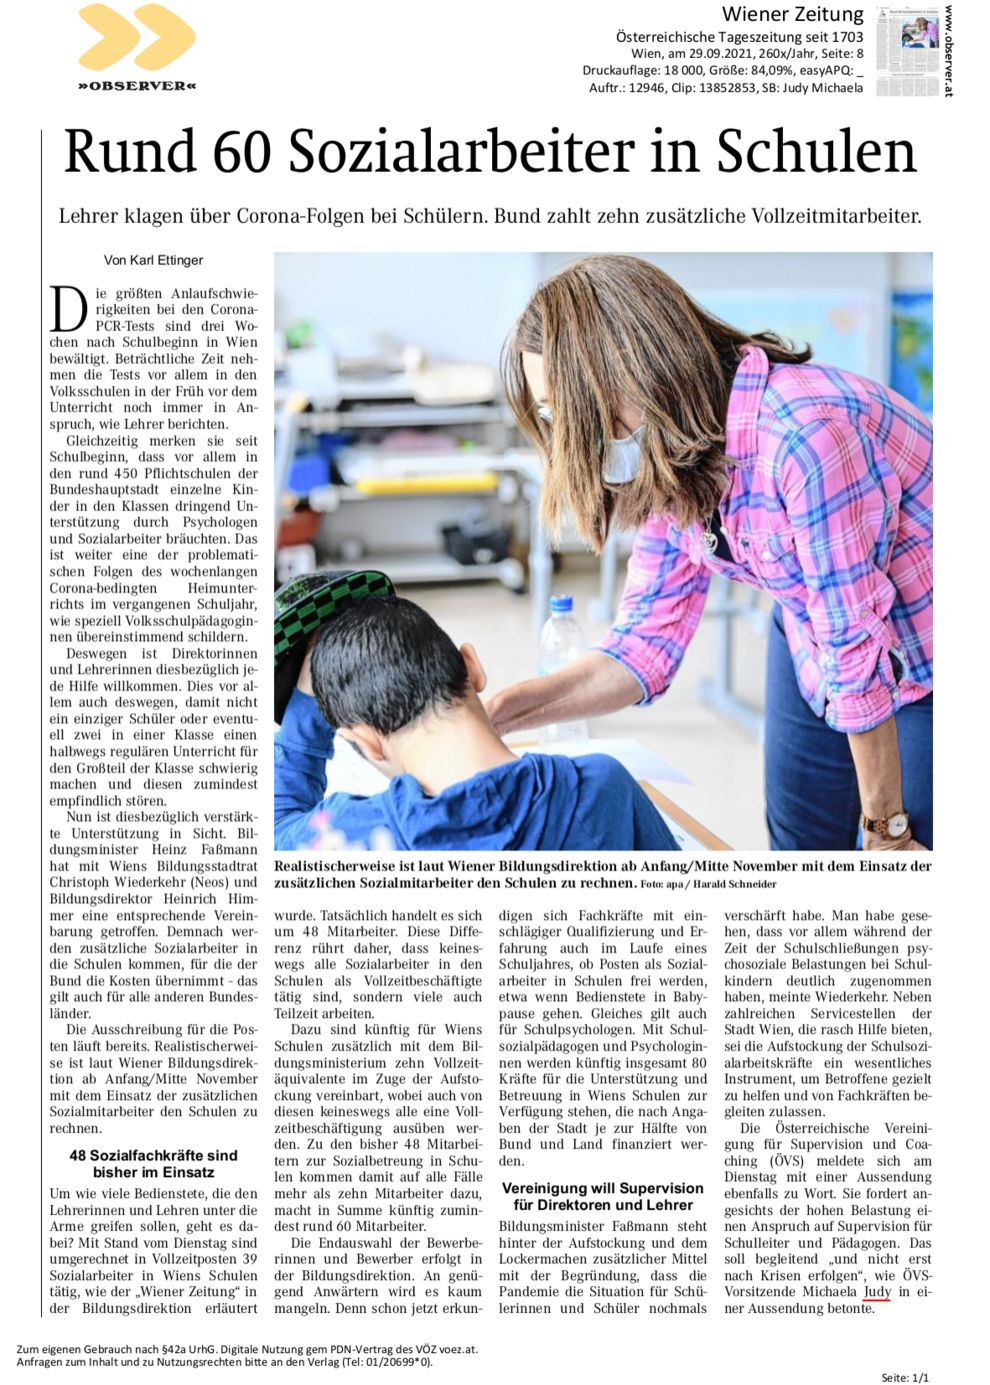 Wiener Zeitung, 29.09.2021: Rund 60 Sozialarbeiter in Schulen